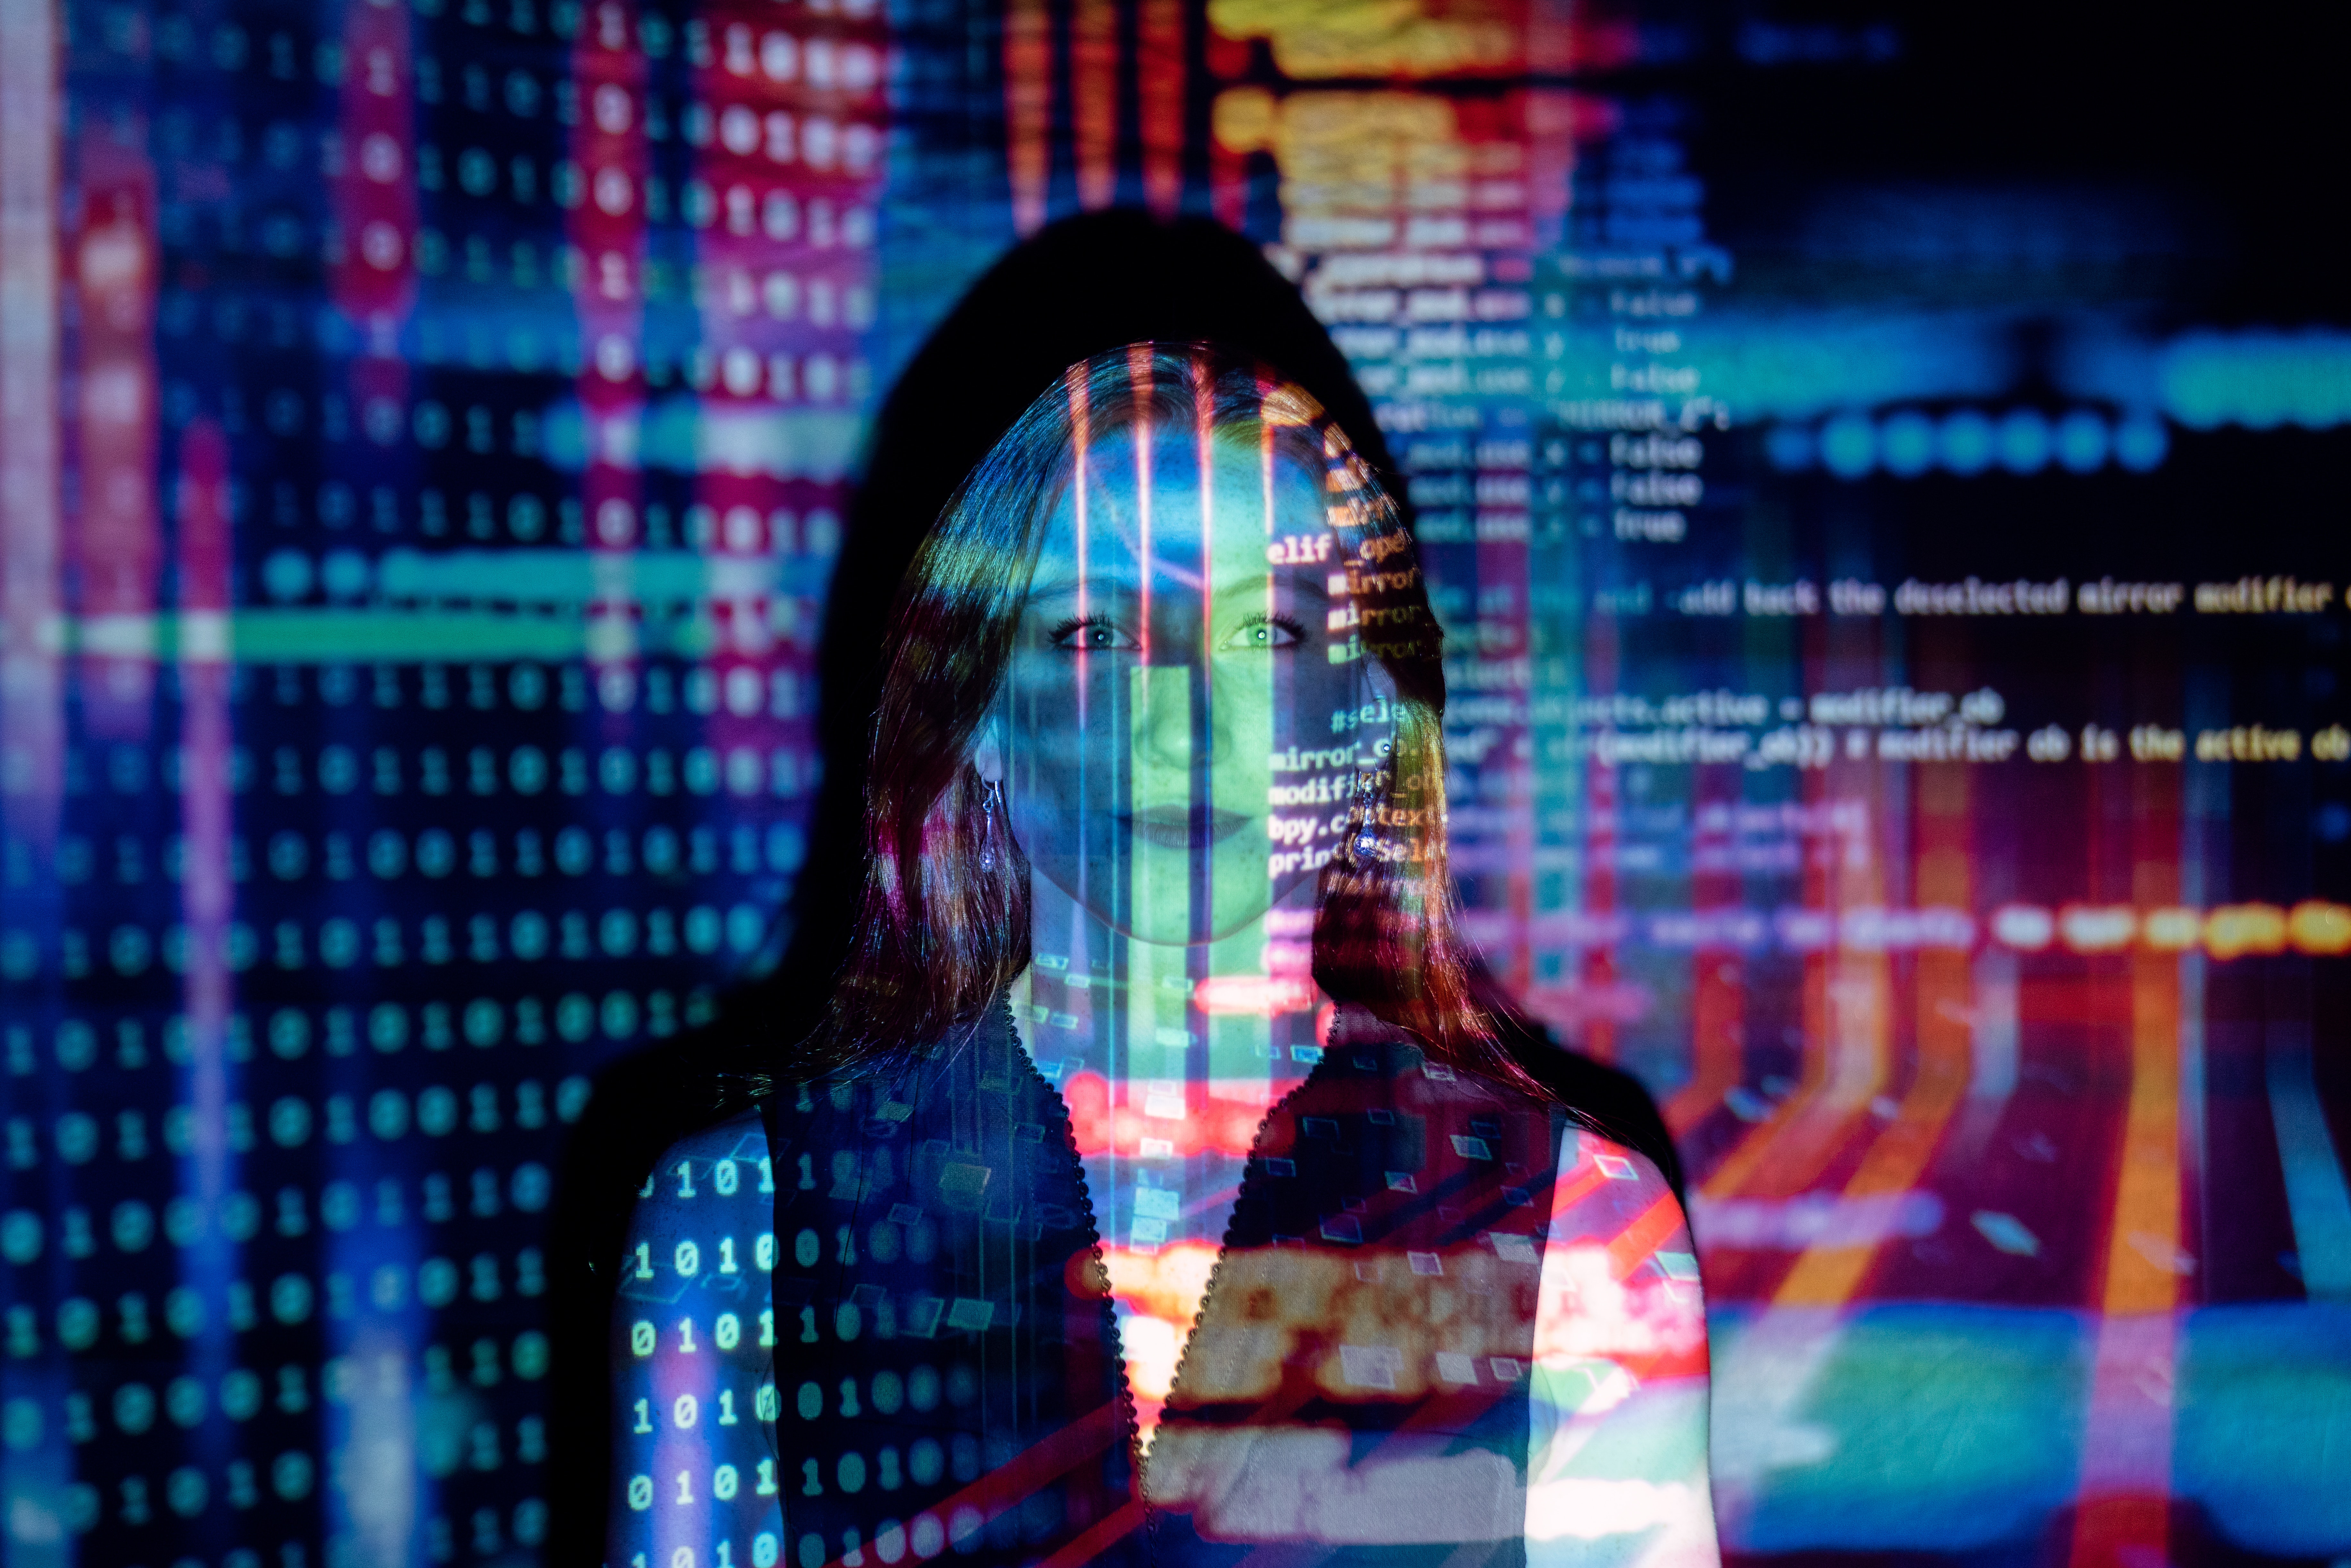 Descrição da imagem: Uma mulher está diante de uma tela de projeção e nela está sendo projetado um emaranhado de números binários e códigos.